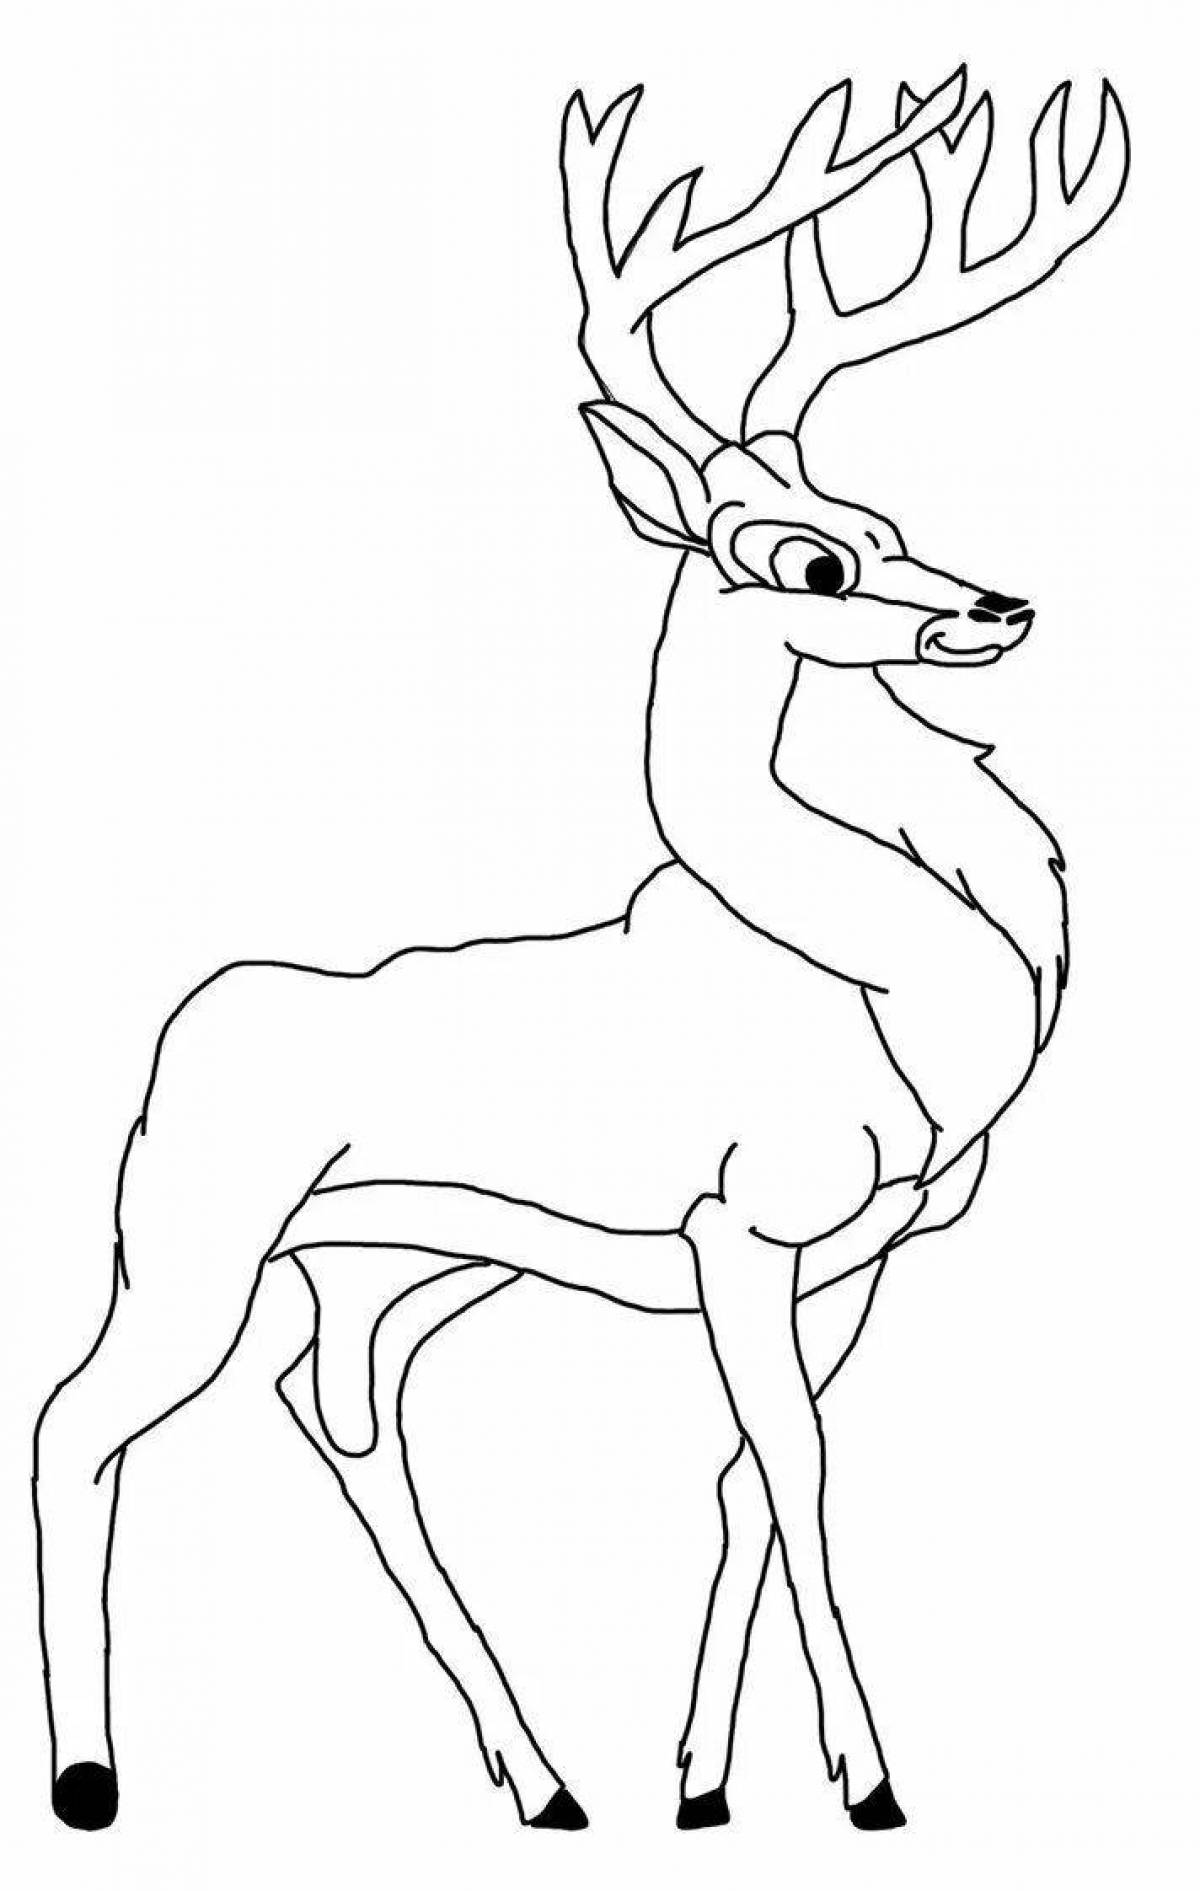 Coloring book happy deer for children